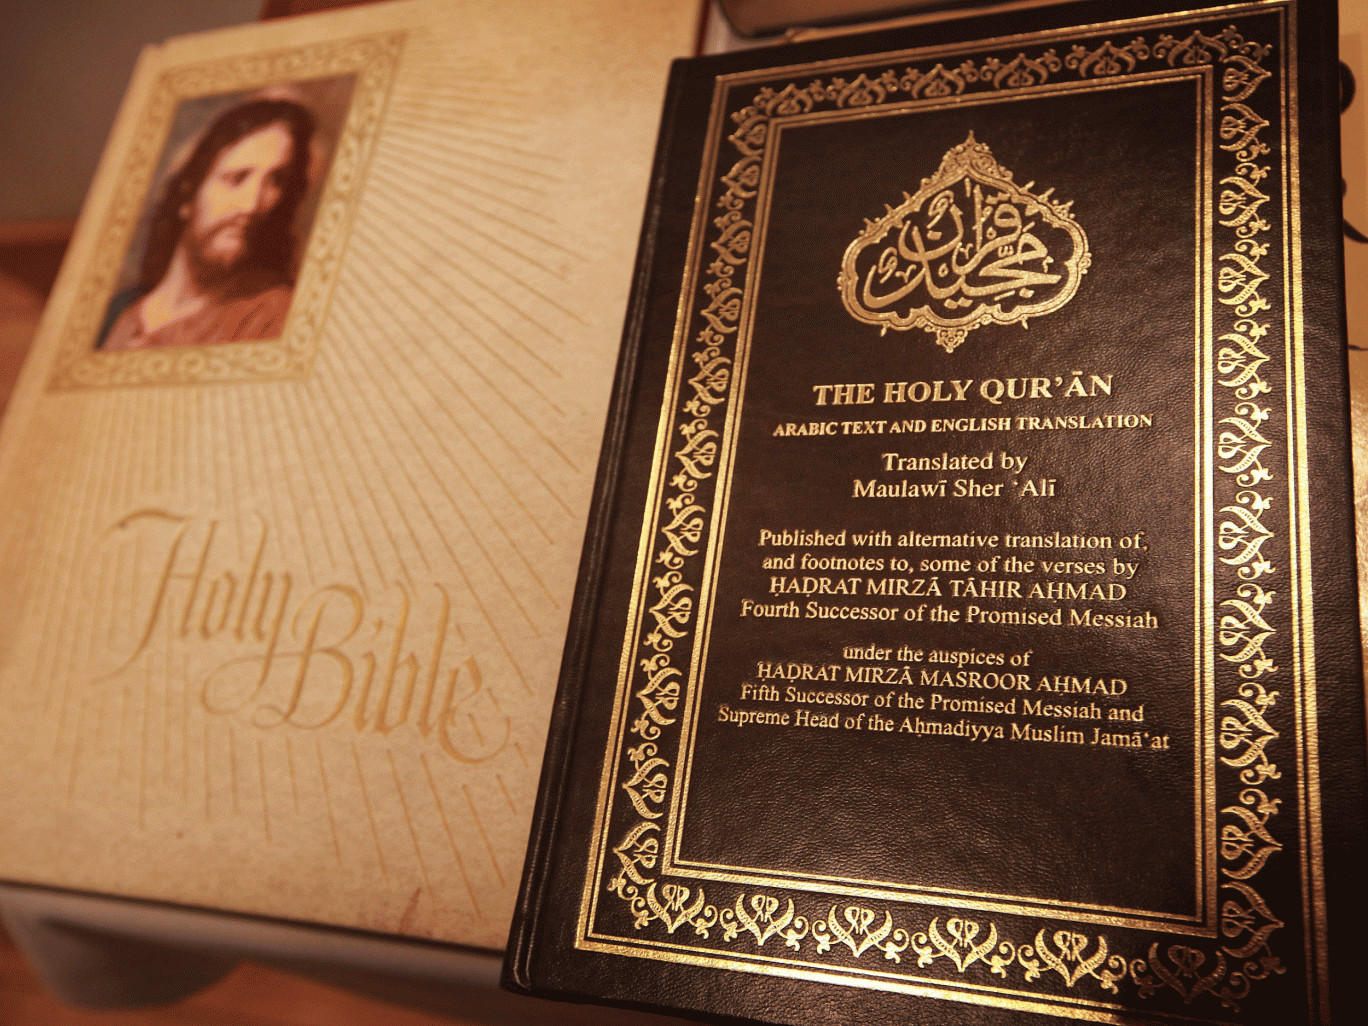 Βίβλος – Κοράνι: Ποιό έχει περισσότερη βία;